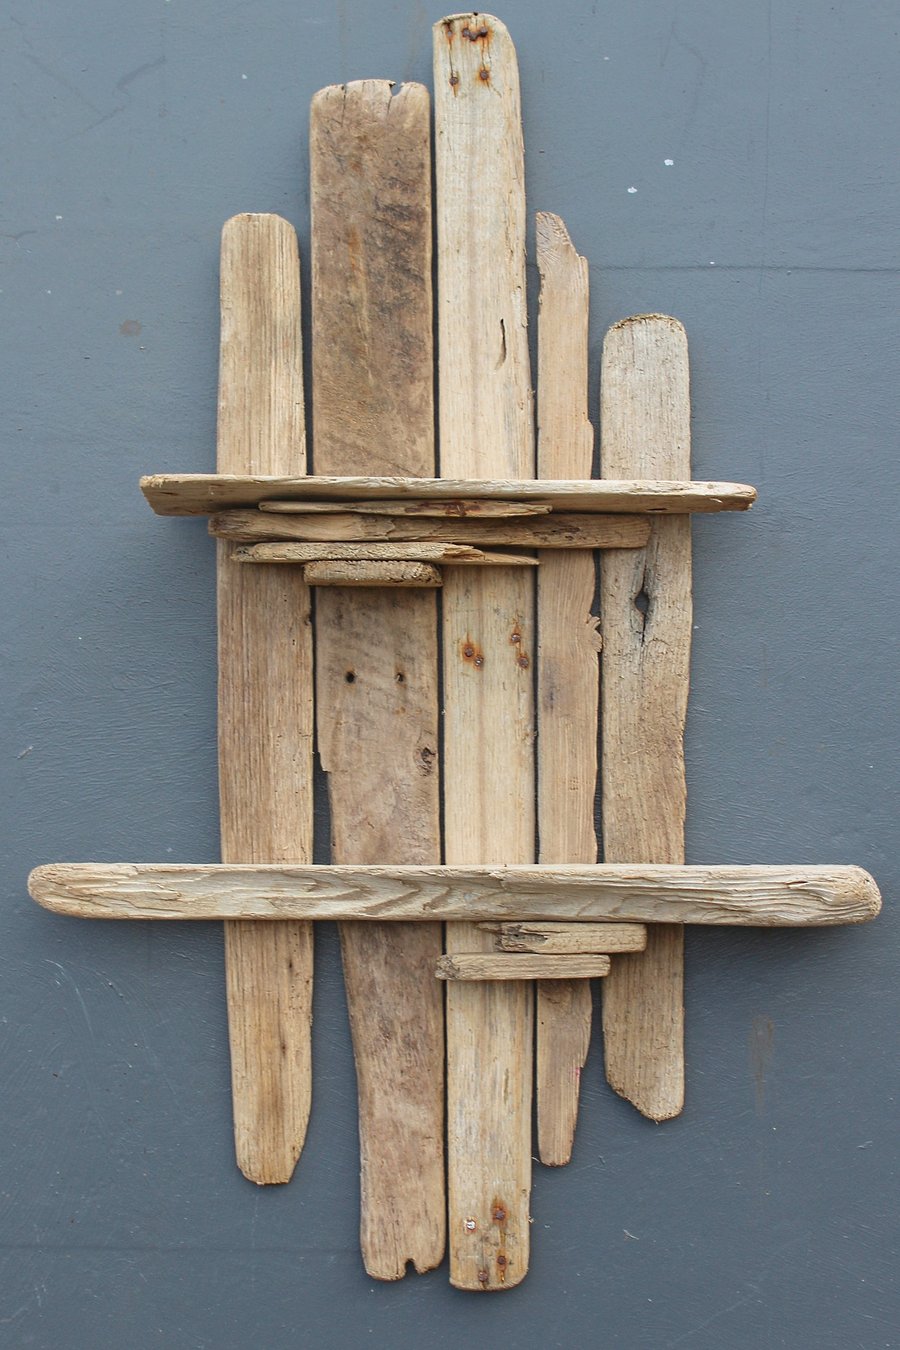 Driftwood shelf,Drift Wood shelves,Driftwood Wall Art,nautical boat Sculpture,